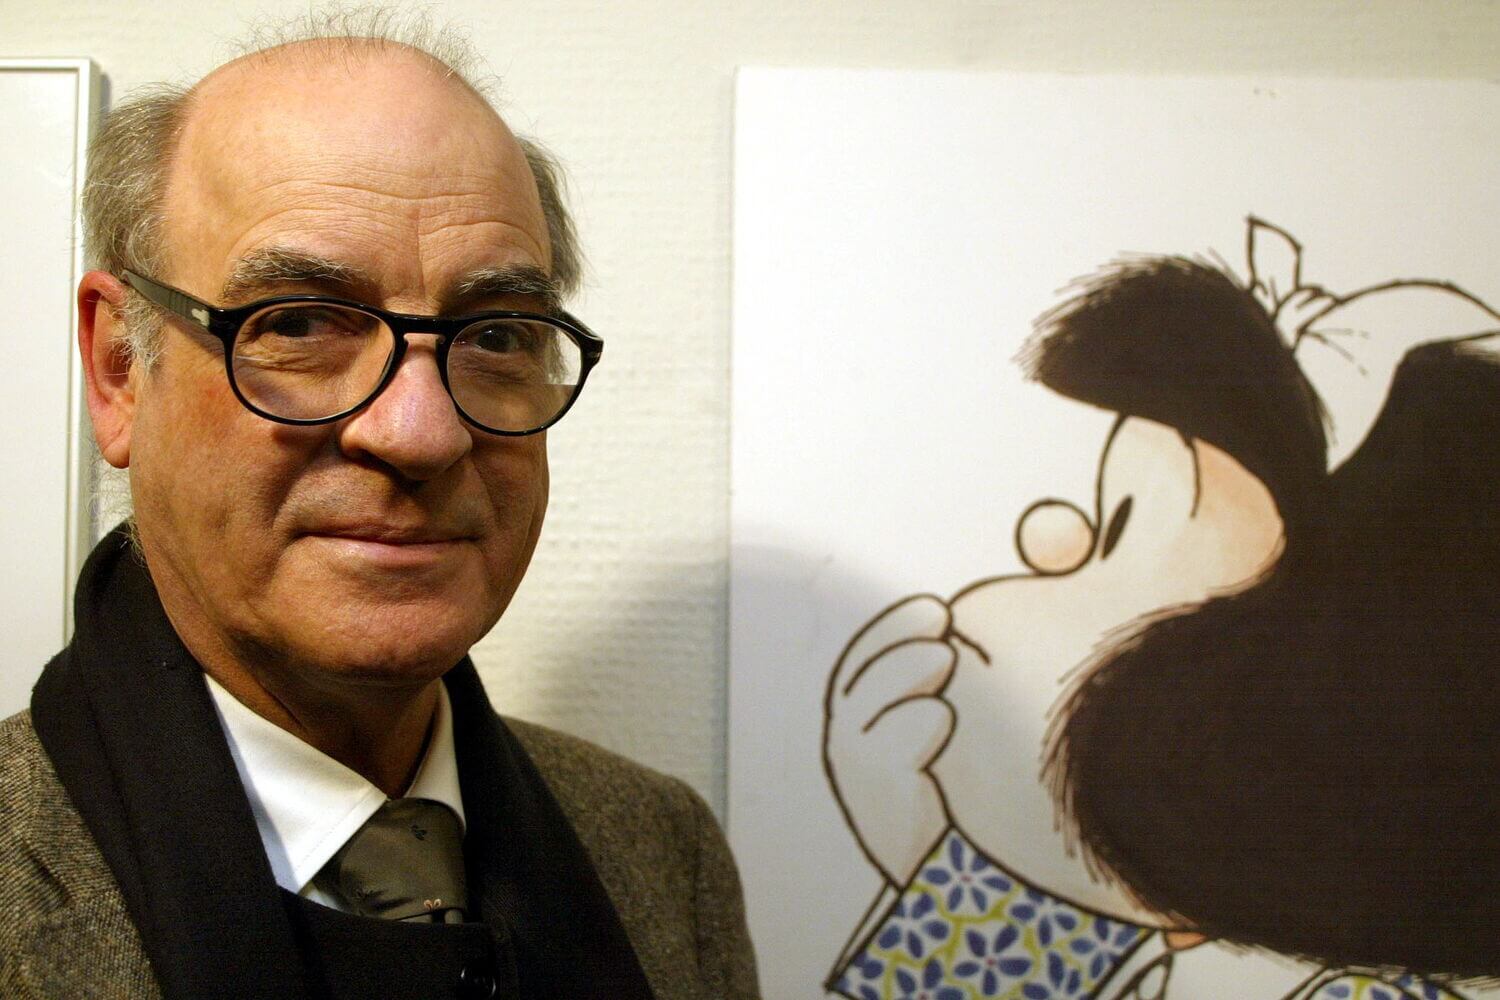 Mafalda - Quino - CFF